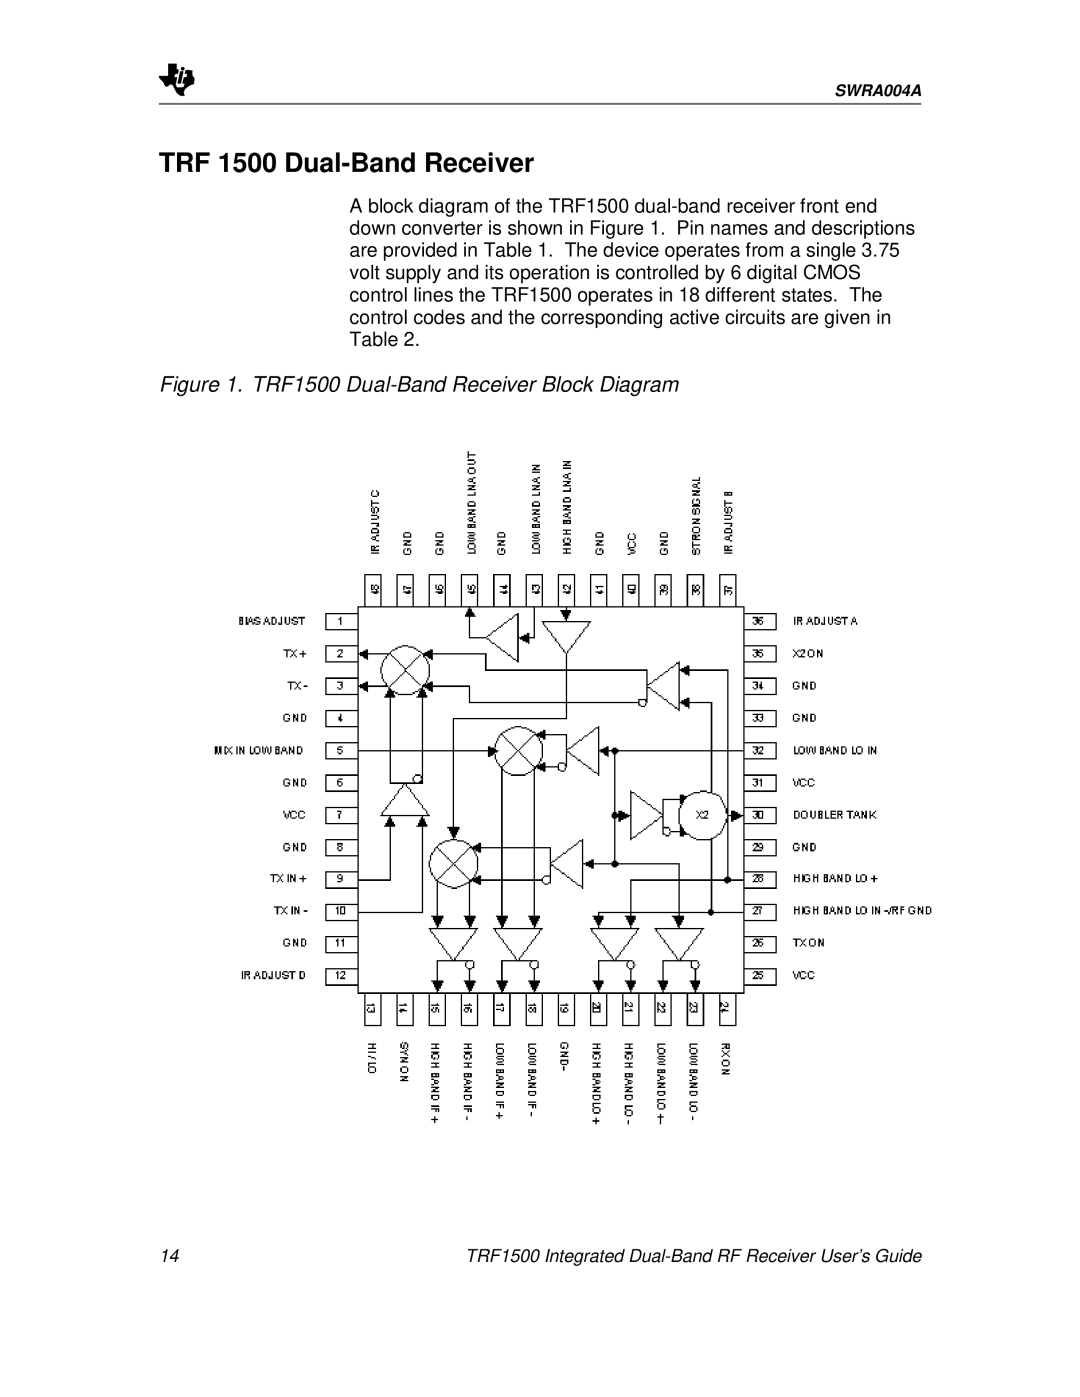 Texas Instruments manual TRF 1500 Dual-BandReceiver, TRF1500 Dual-BandReceiver Block Diagram 